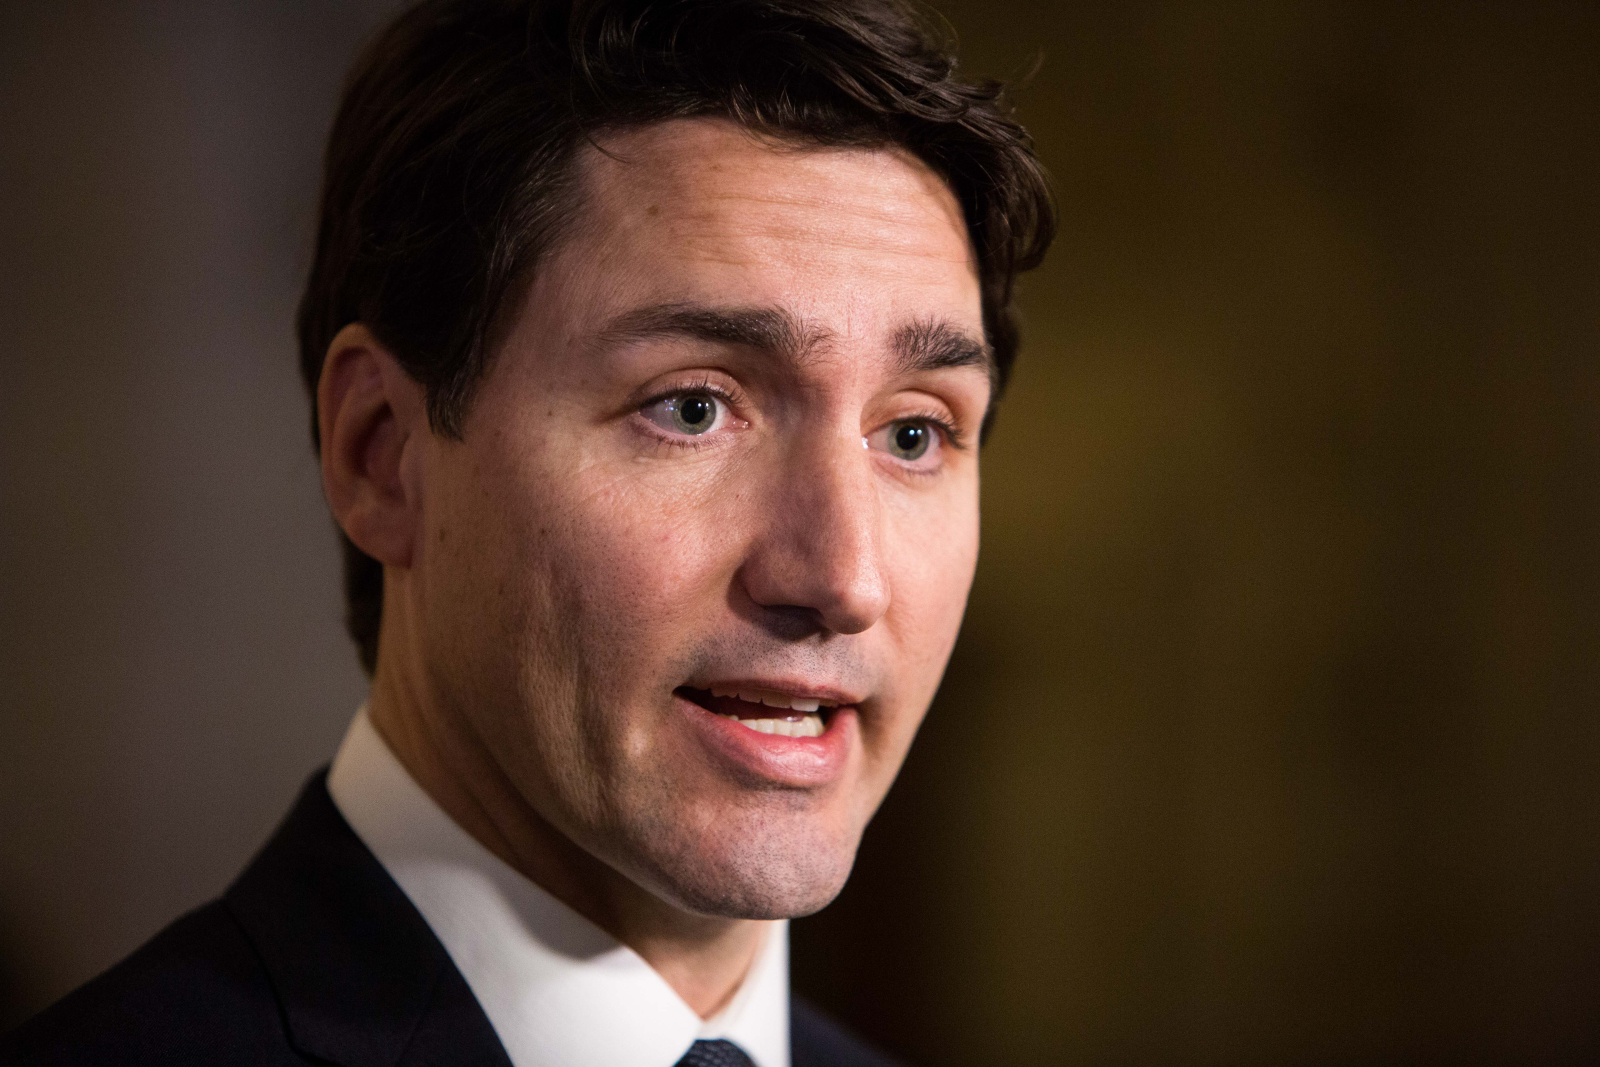 Third instance of Trudeau in skin-darkening makeup emerges